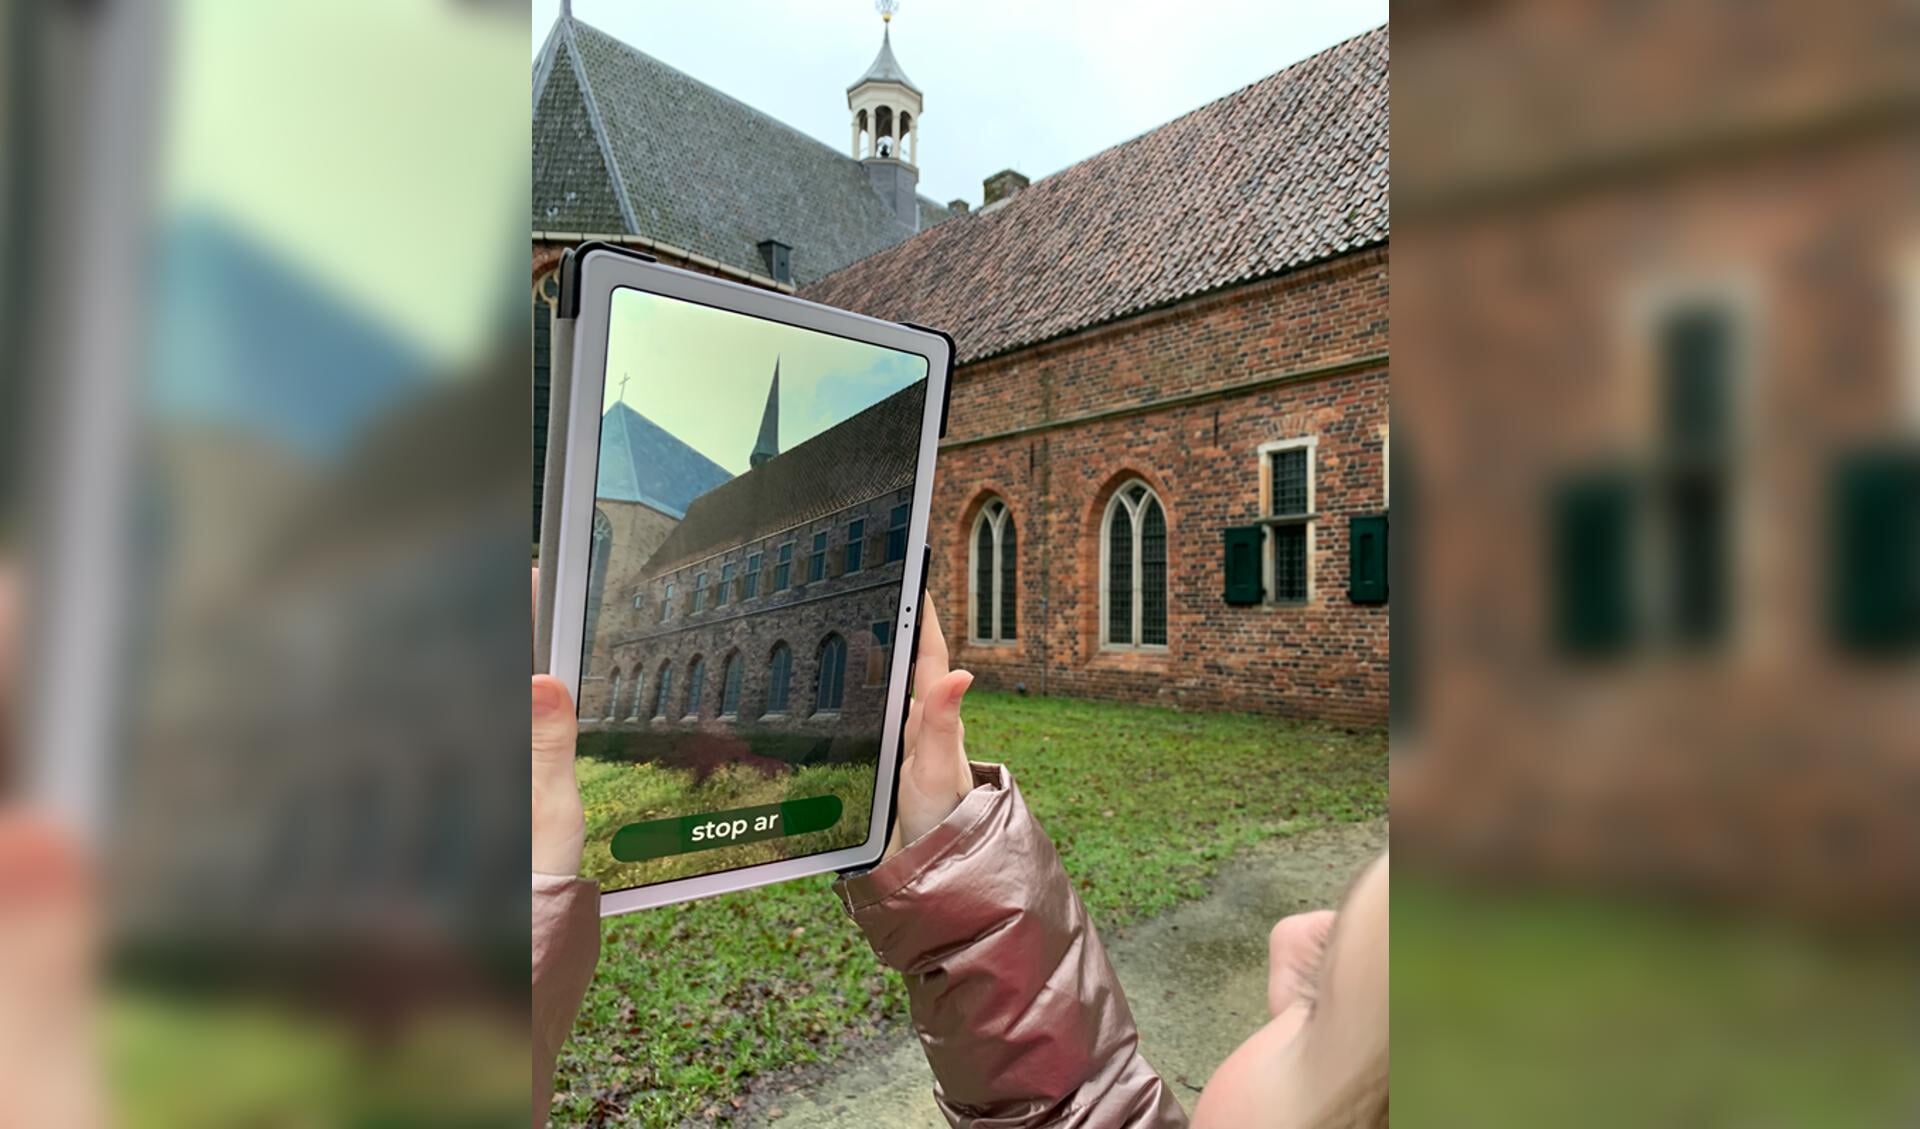 Met de AR-app kan een wandeling rondom de kloosterenclave gemaakt worden. (foto: Museum Klooster Ter Apel)